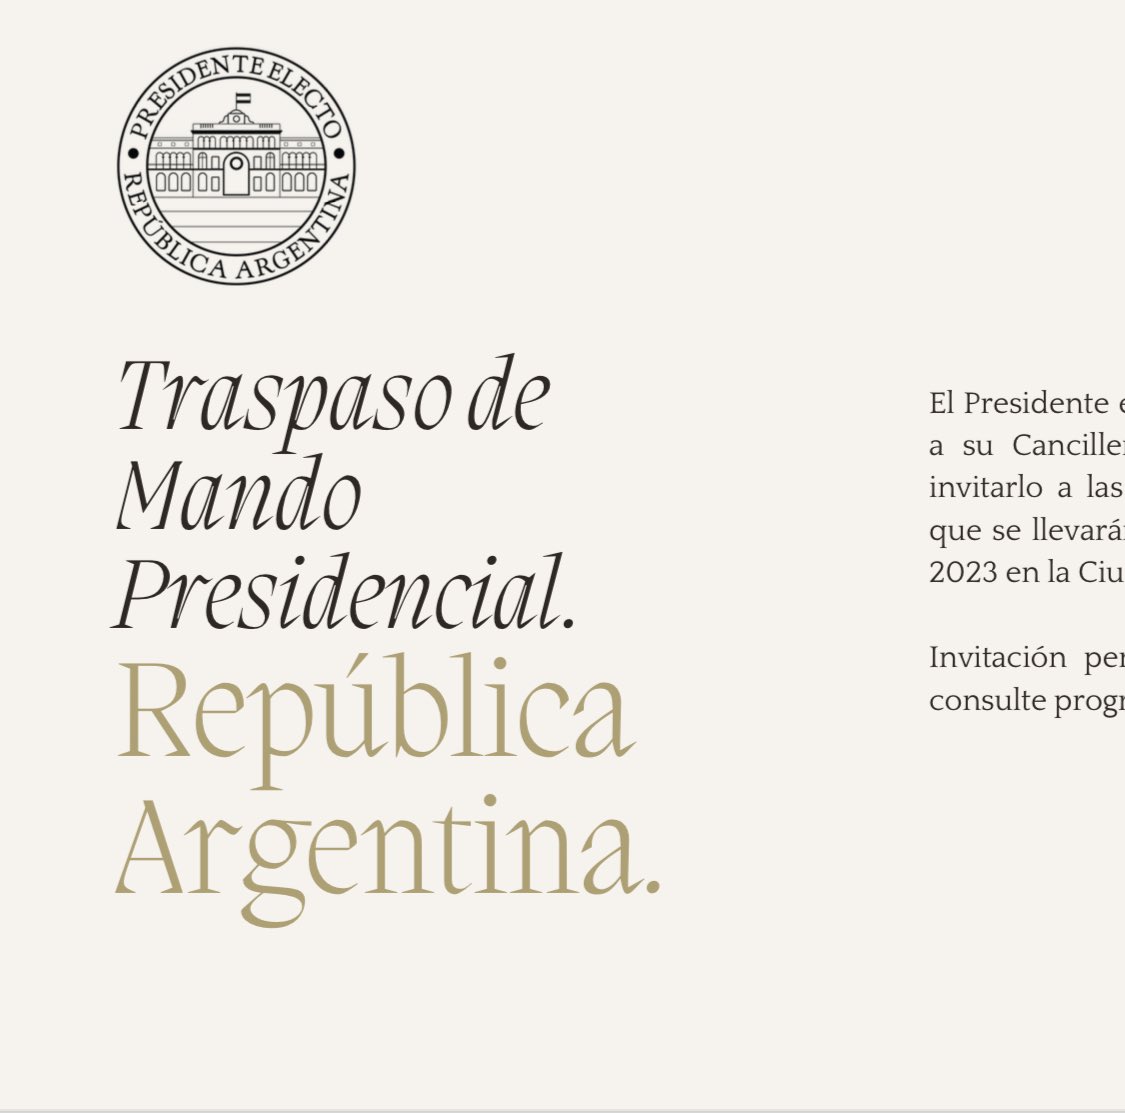 Como venezolano, me honra profundamente recibir la invitación al Traspaso de Mando Presidencial por parte del nuevo gobierno de Argentina. Mi agradecimiento al presidente Javier Milei y a todo su equipo. ¡CONFIRMO ASISTENCIA!